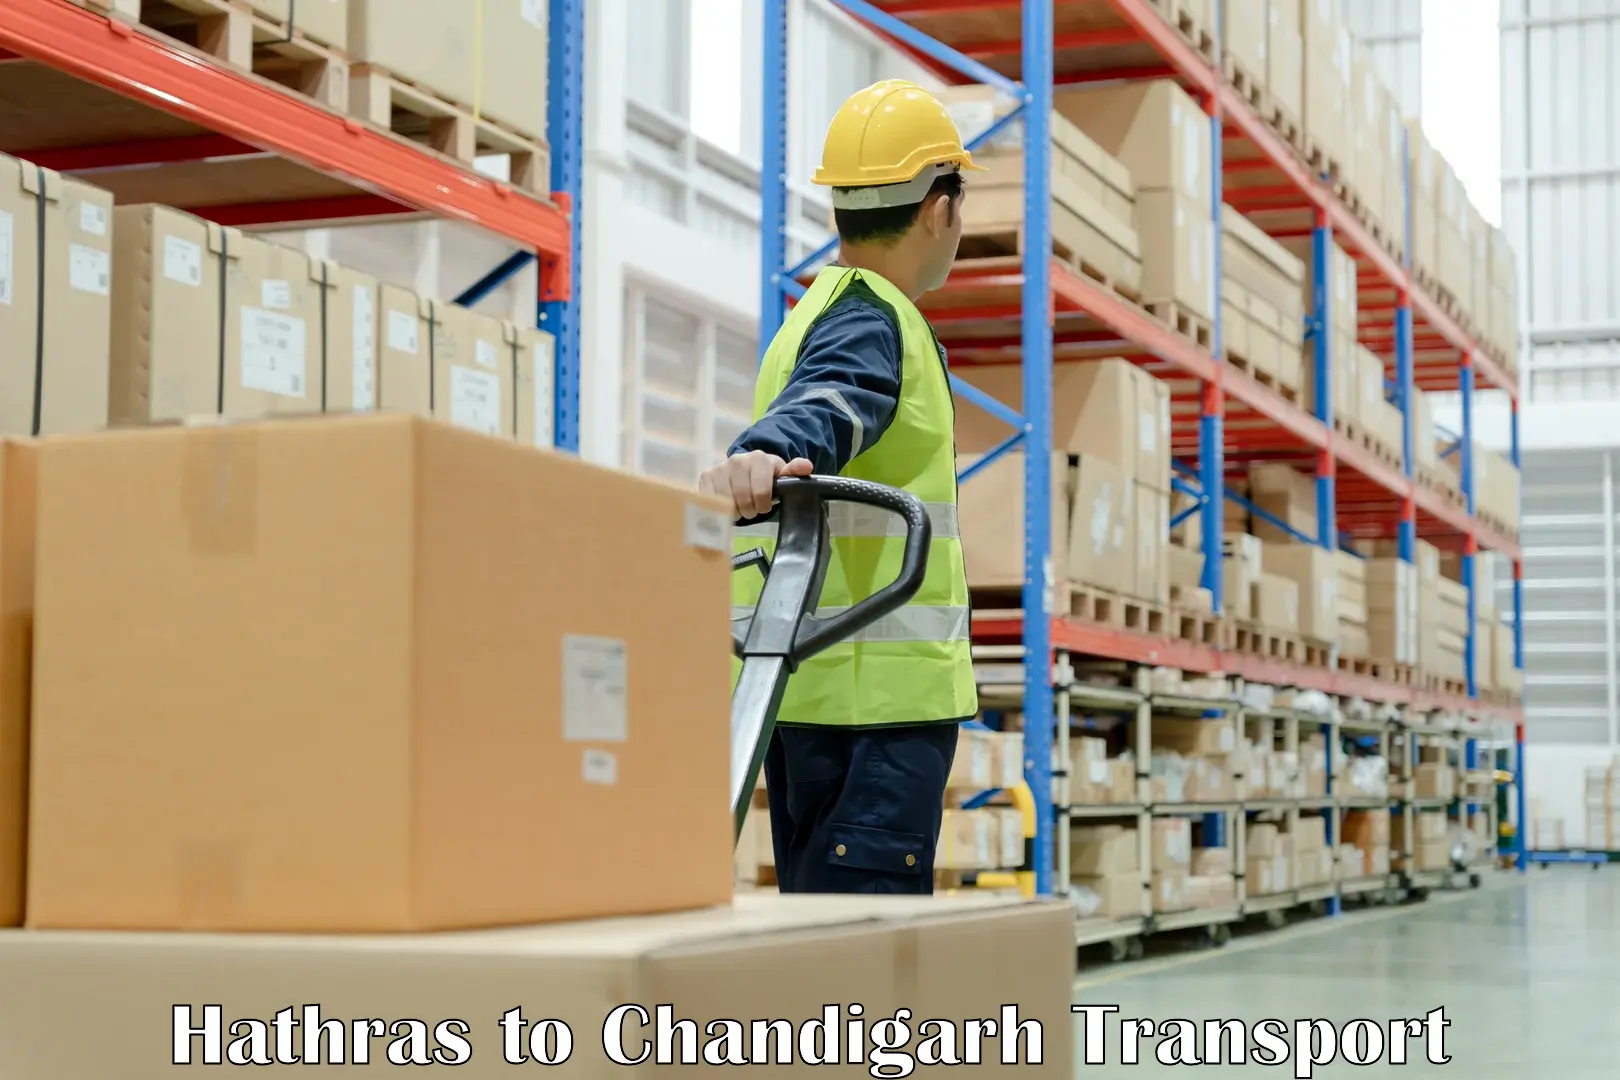 Furniture transport service Hathras to Chandigarh